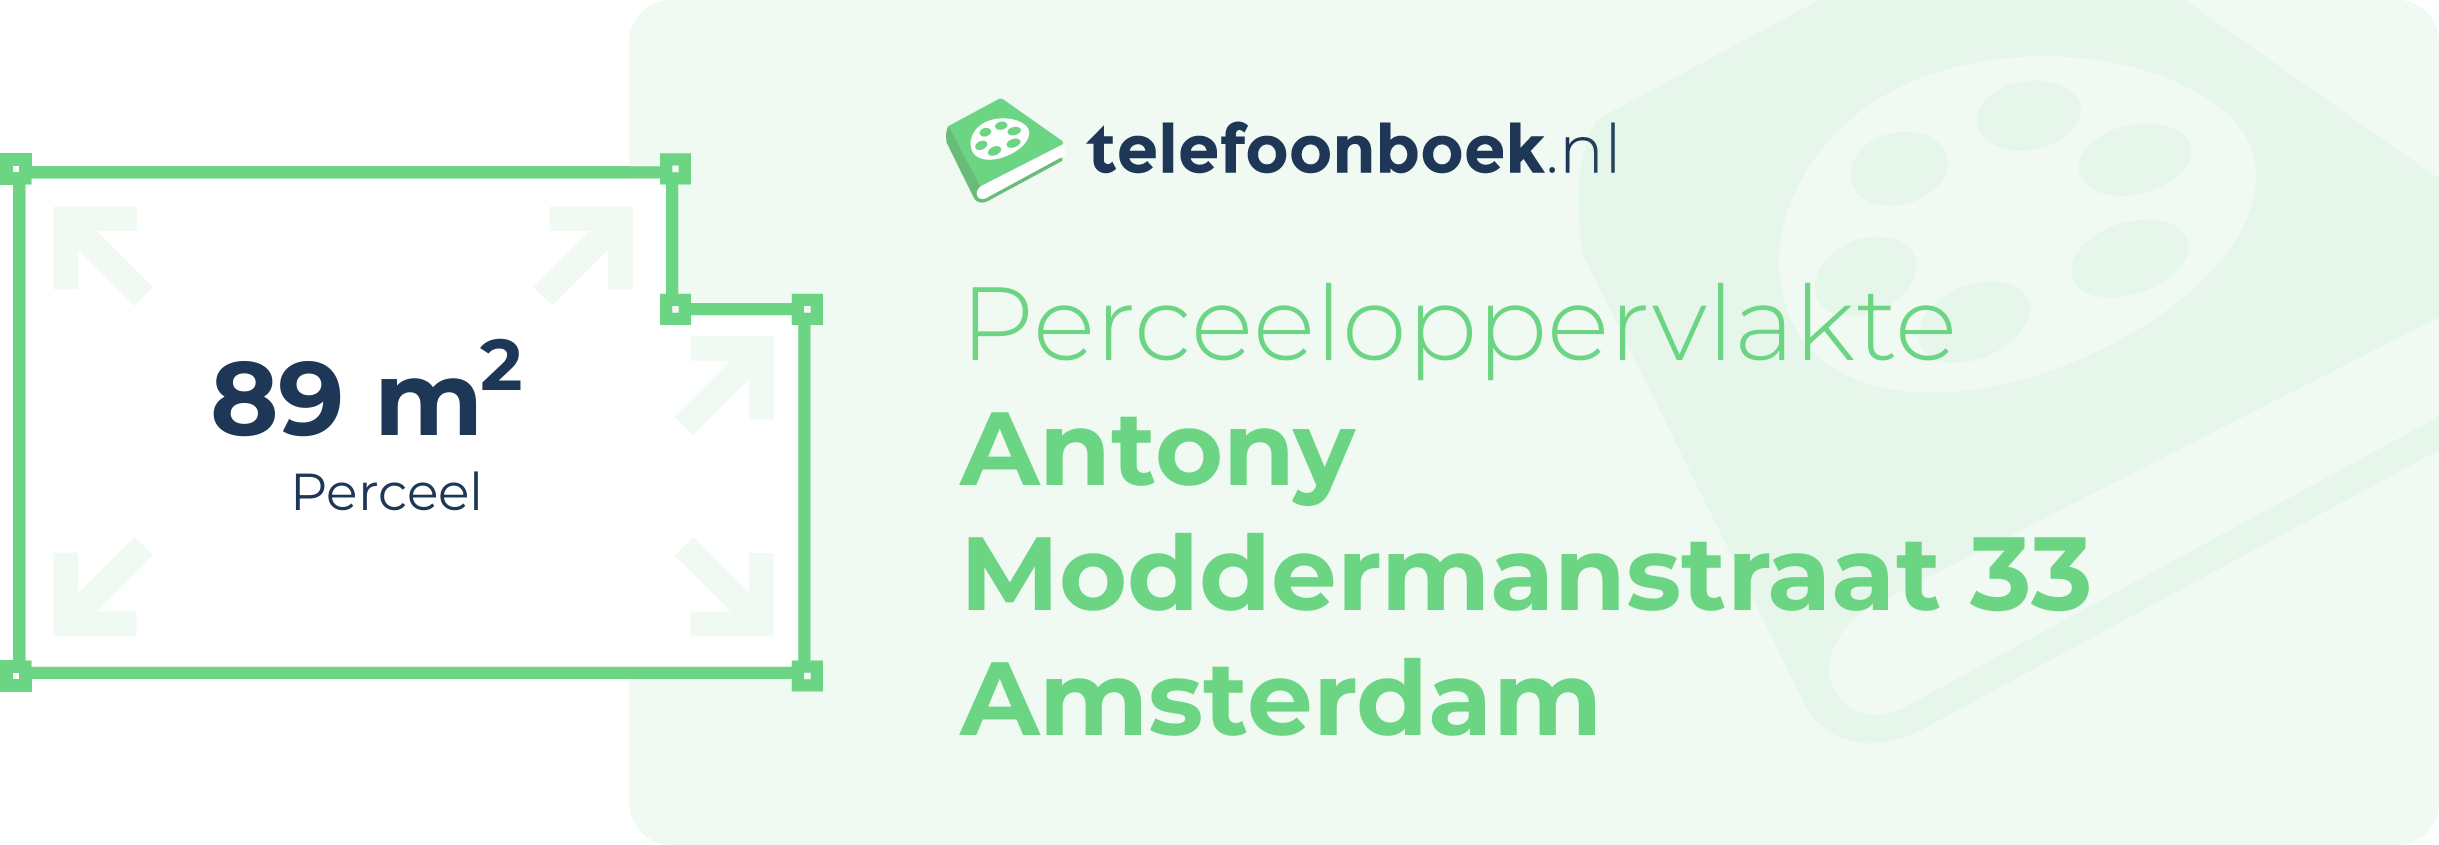 Perceeloppervlakte Antony Moddermanstraat 33 Amsterdam